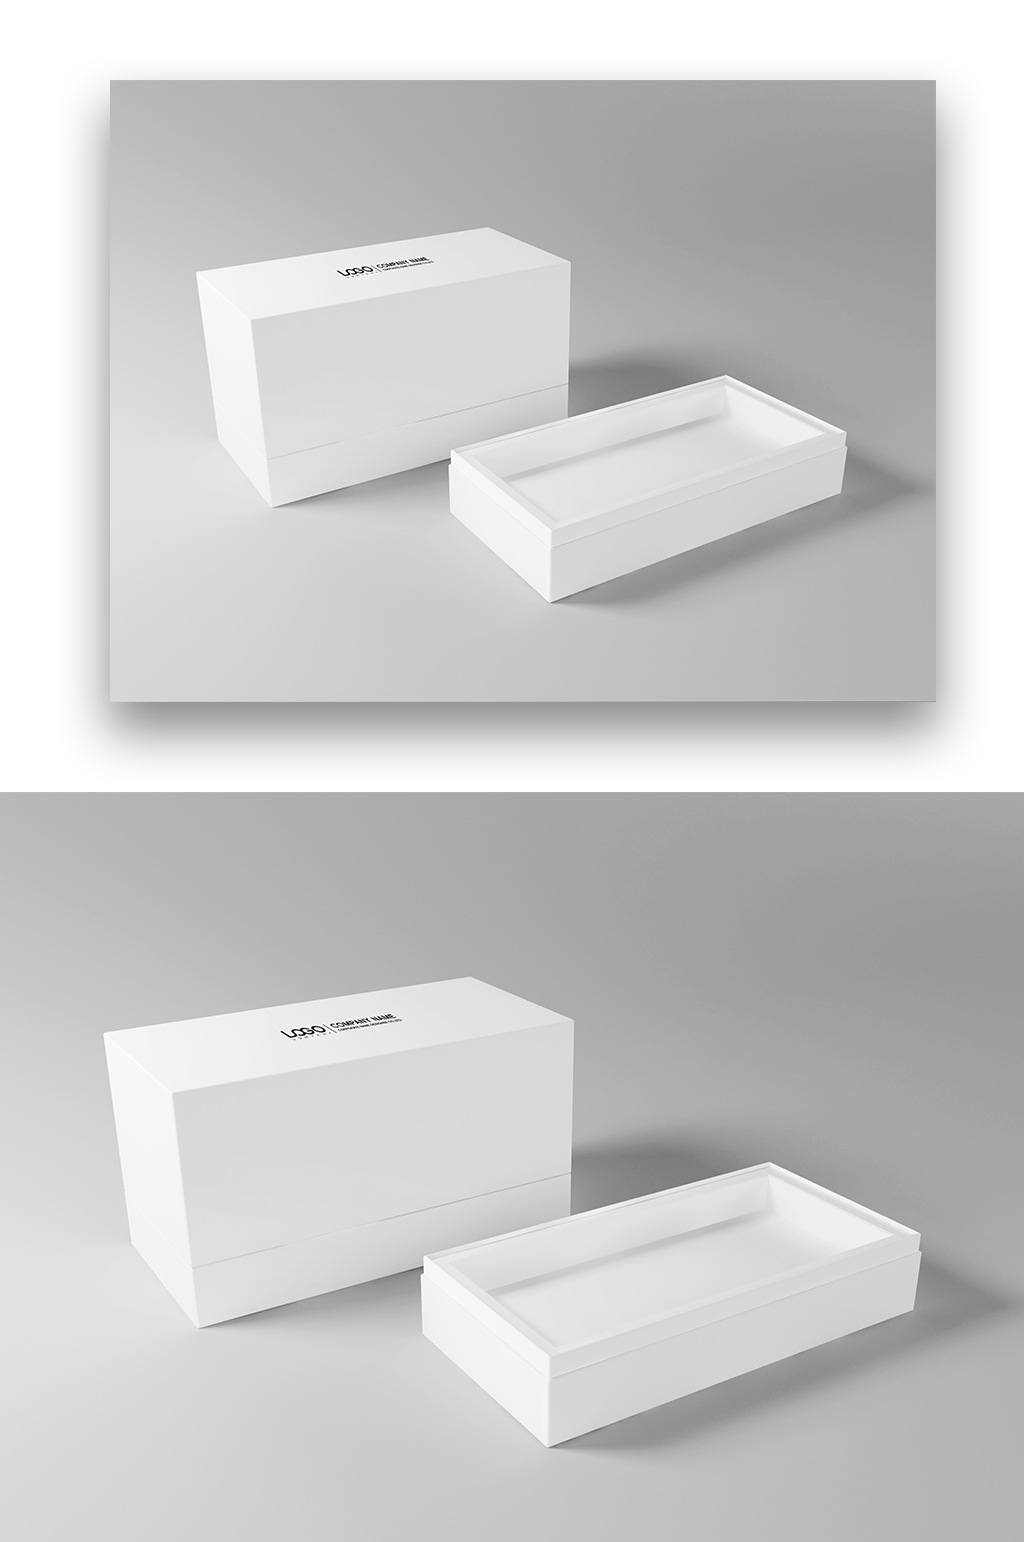 创意包装盒样机设计立即下载小清新礼盒包装样机高端礼盒展示样机三